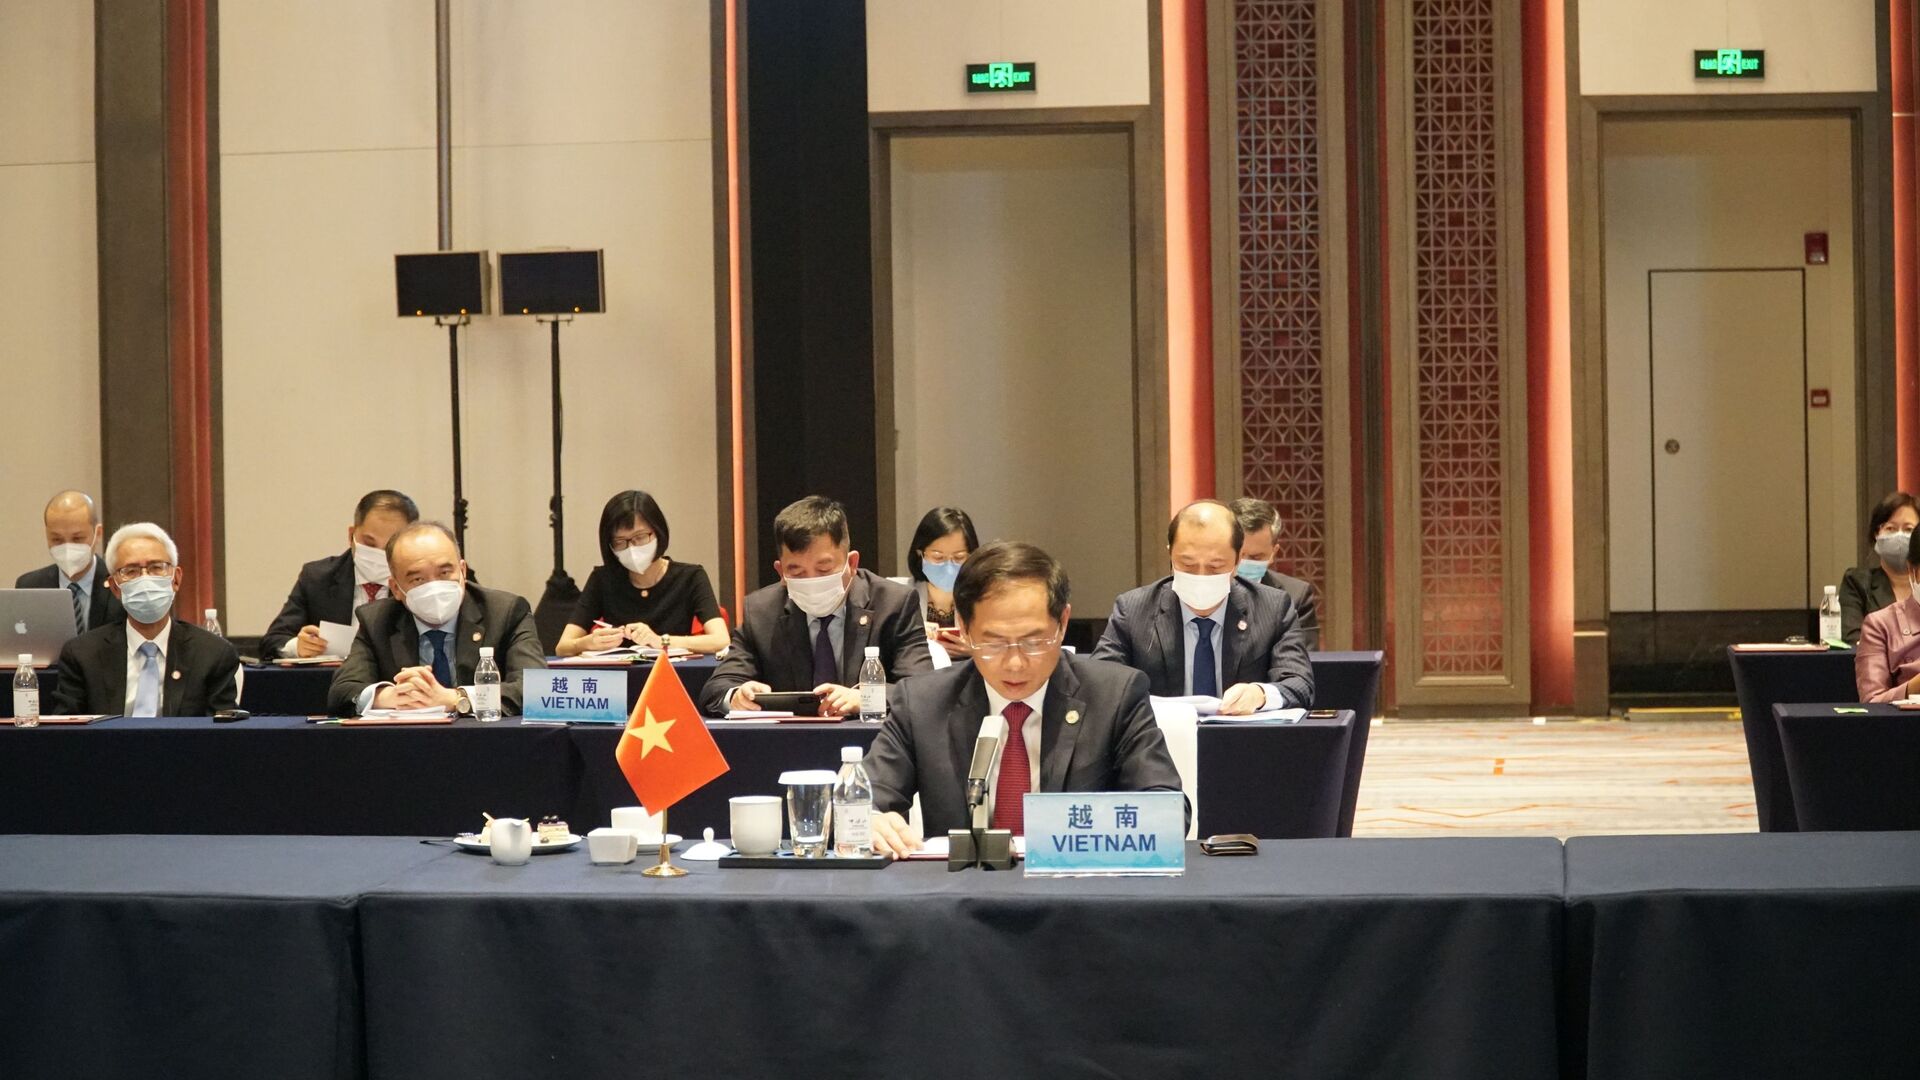 Bộ trưởng Ngoại giao Bùi Thanh Sơn tham dự Hội nghị đặc biệt Bộ trưởng Ngoại giao ASEAN - Trung Quốc.  - Sputnik Việt Nam, 1920, 08.06.2021